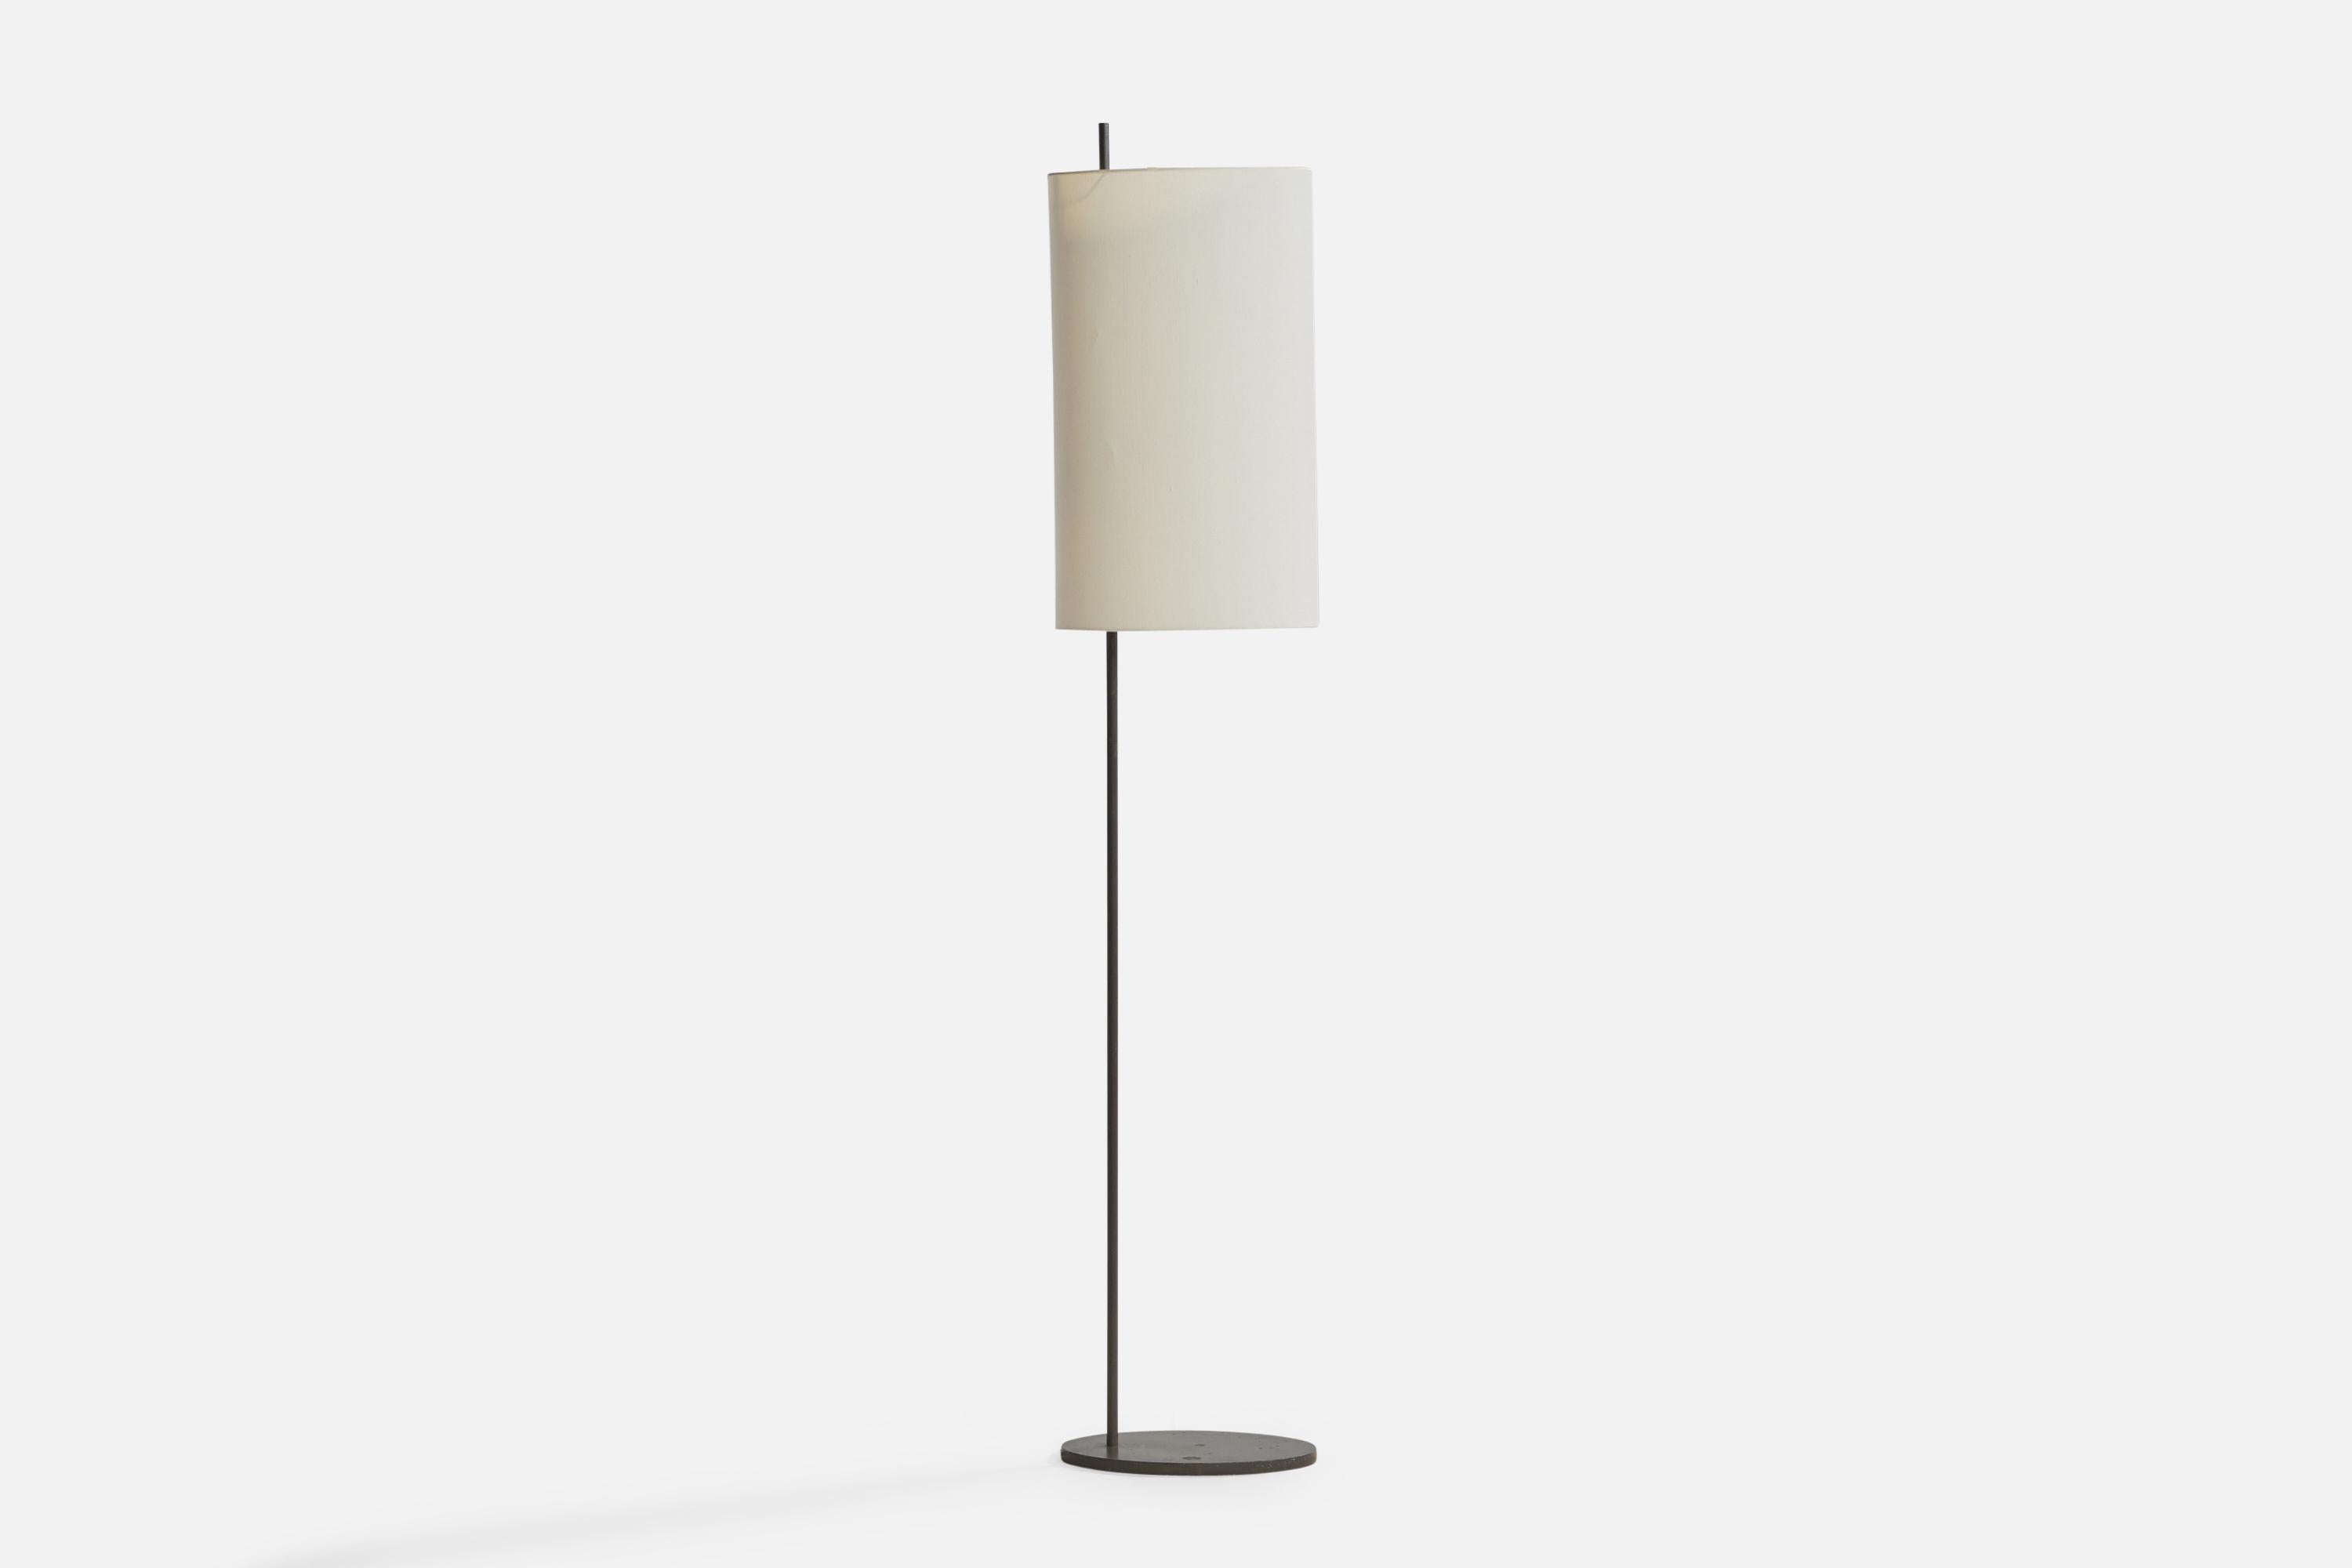 Lampadaire en métal laqué gris et papier conçu par Arne Jacobsen et produit par Louis Poulsen, Danemark, c. 1950.

Dimensions totales (pouces) : 71